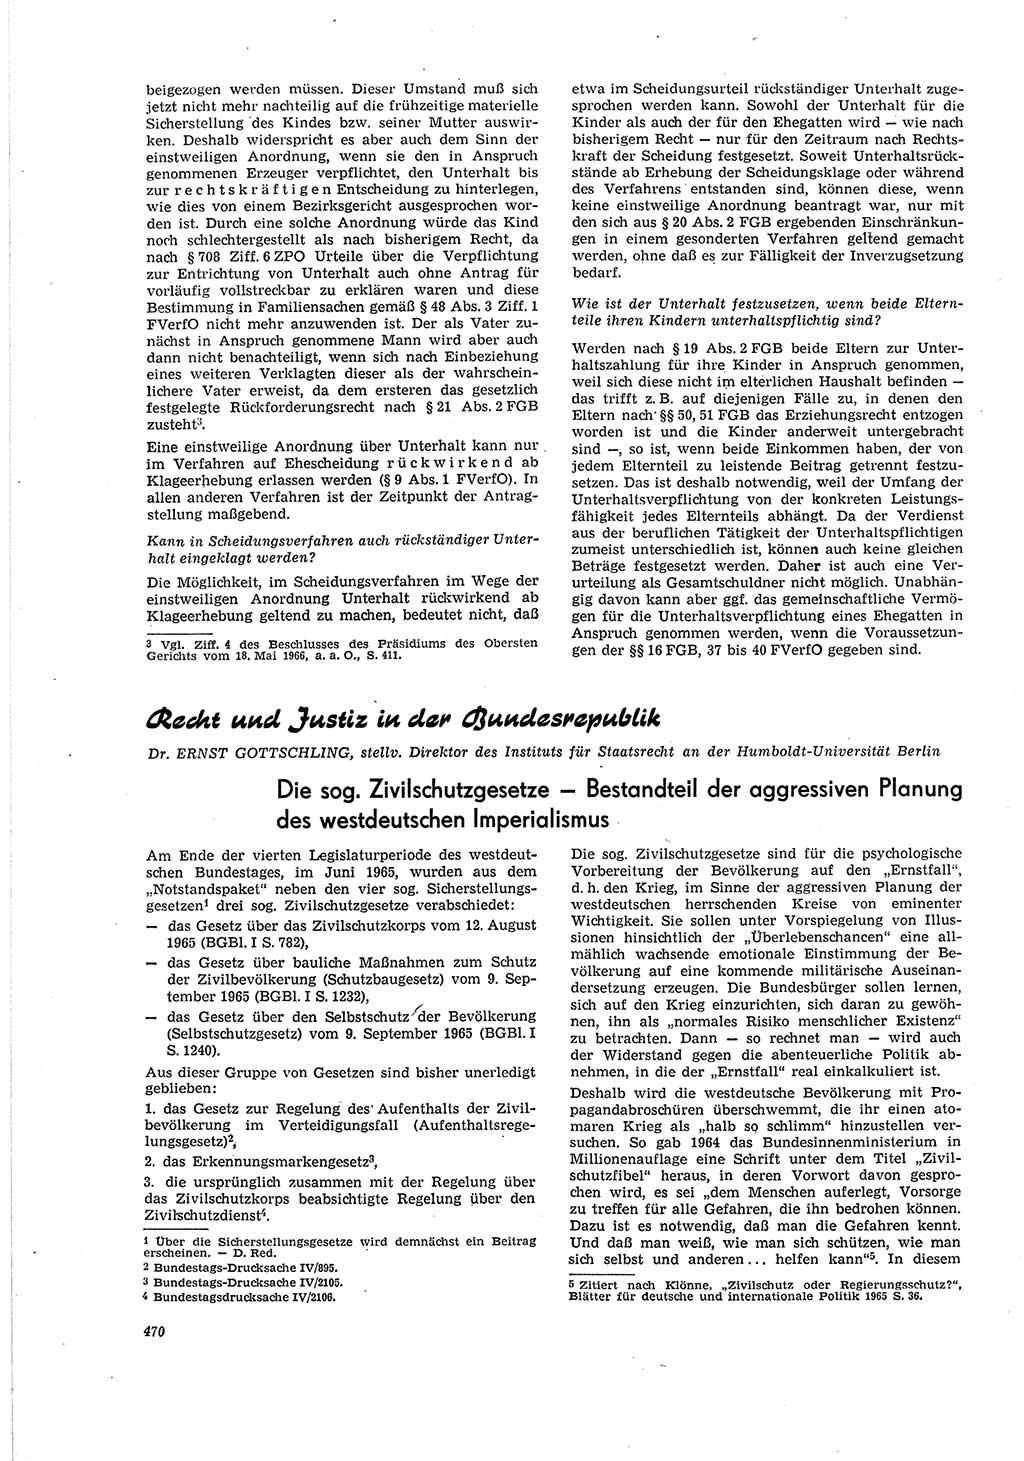 Neue Justiz (NJ), Zeitschrift für Recht und Rechtswissenschaft [Deutsche Demokratische Republik (DDR)], 20. Jahrgang 1966, Seite 470 (NJ DDR 1966, S. 470)